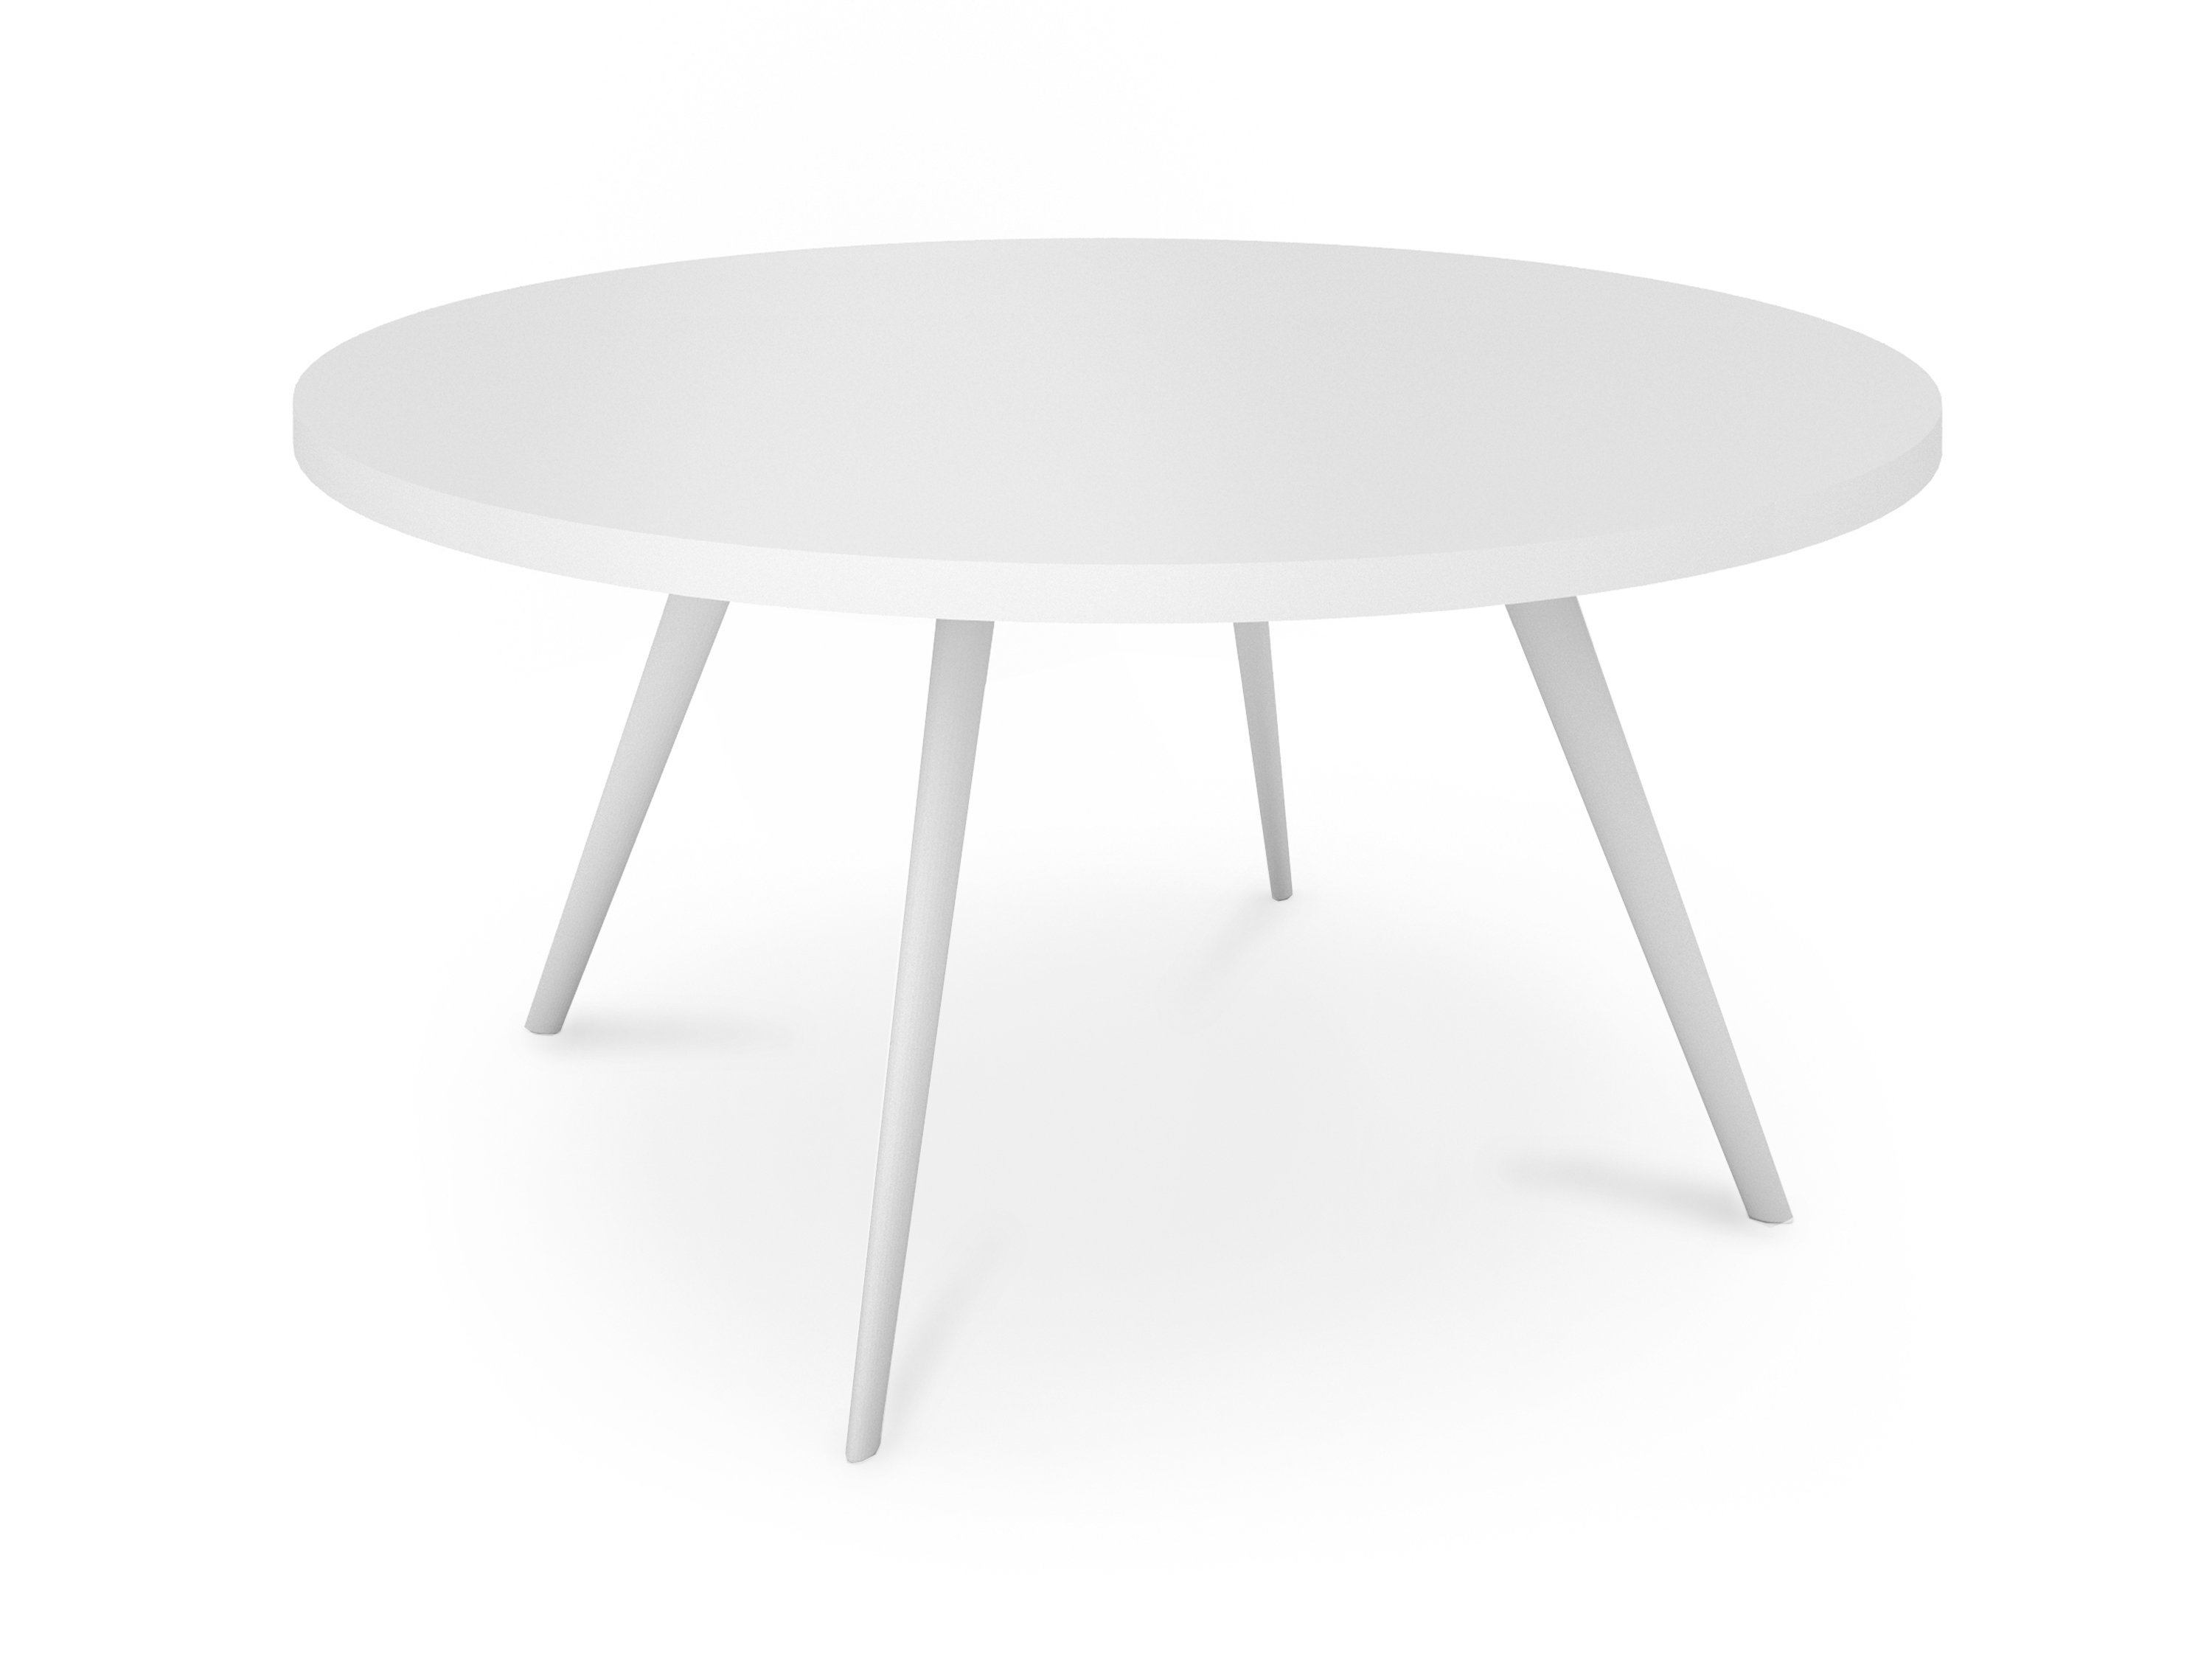 WS - Air coffee table - 800dia - All white